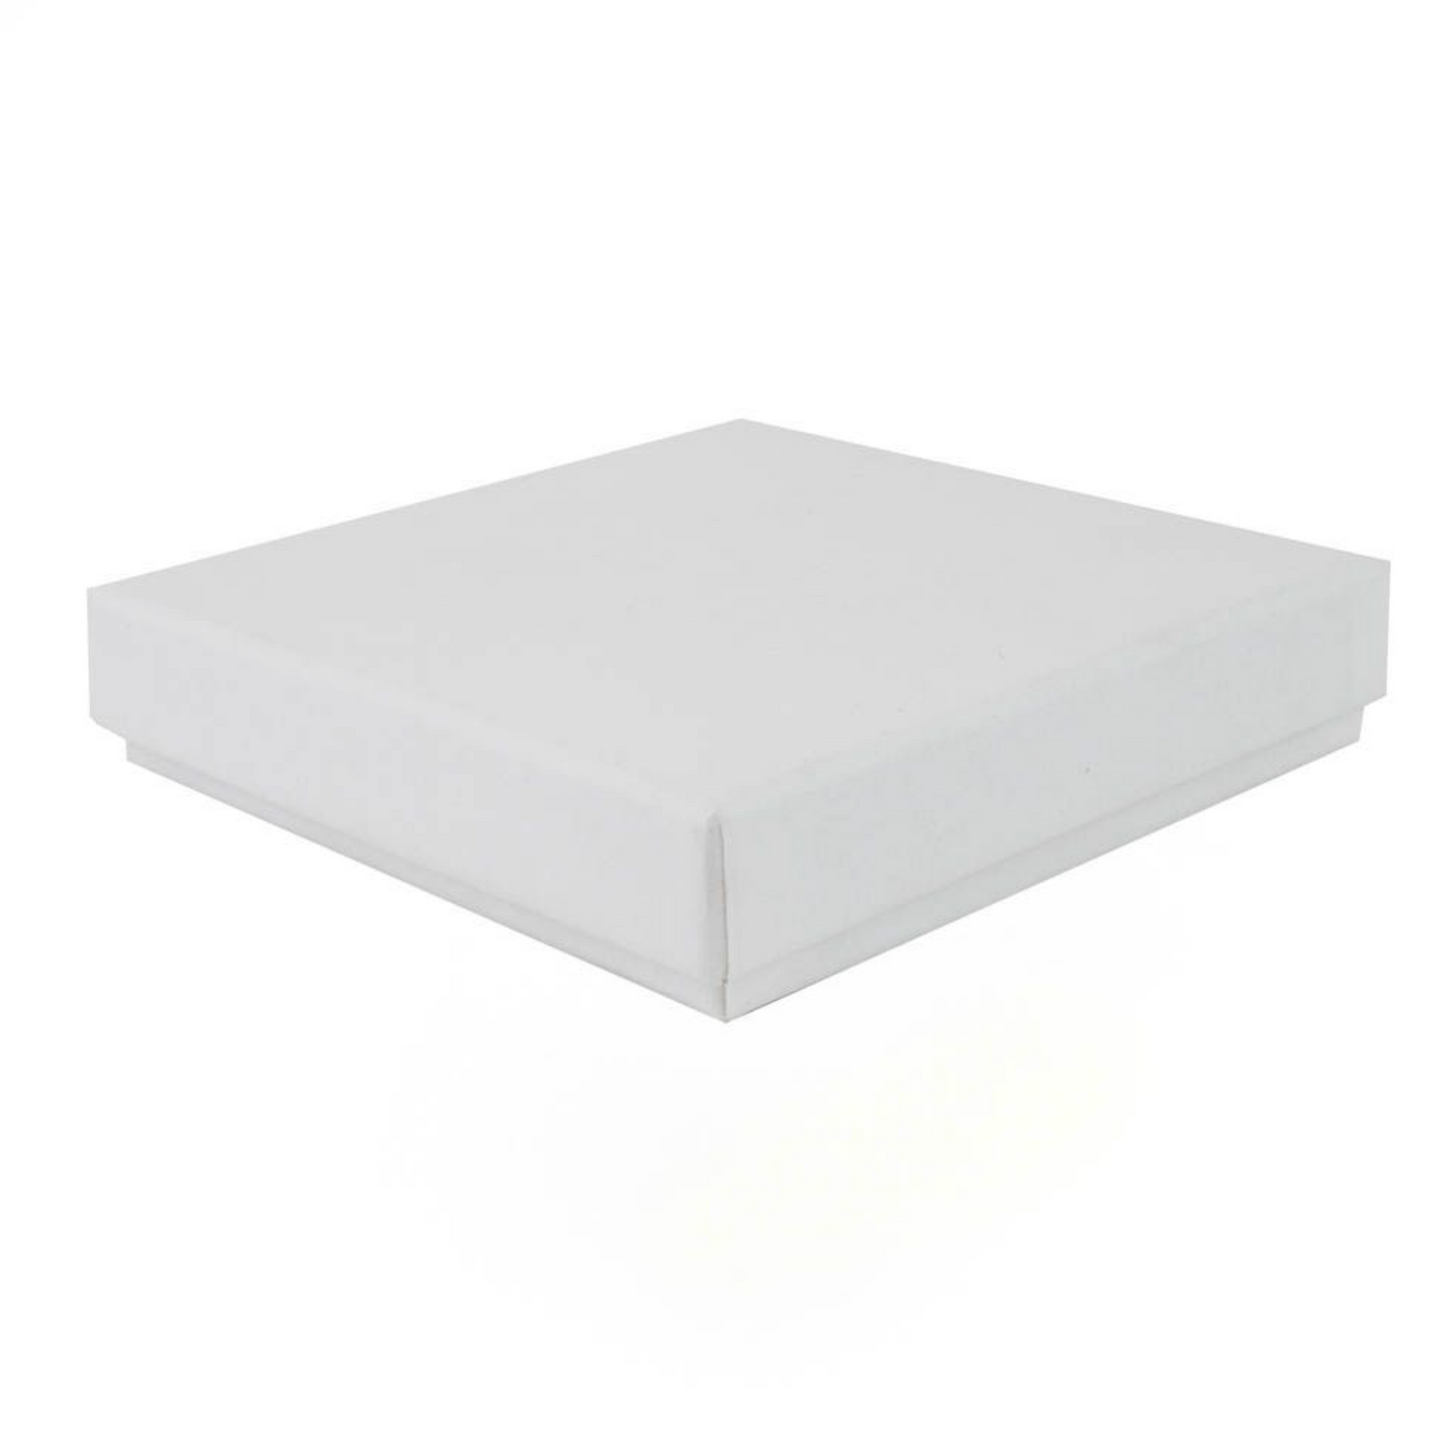 White Gift Box - Square